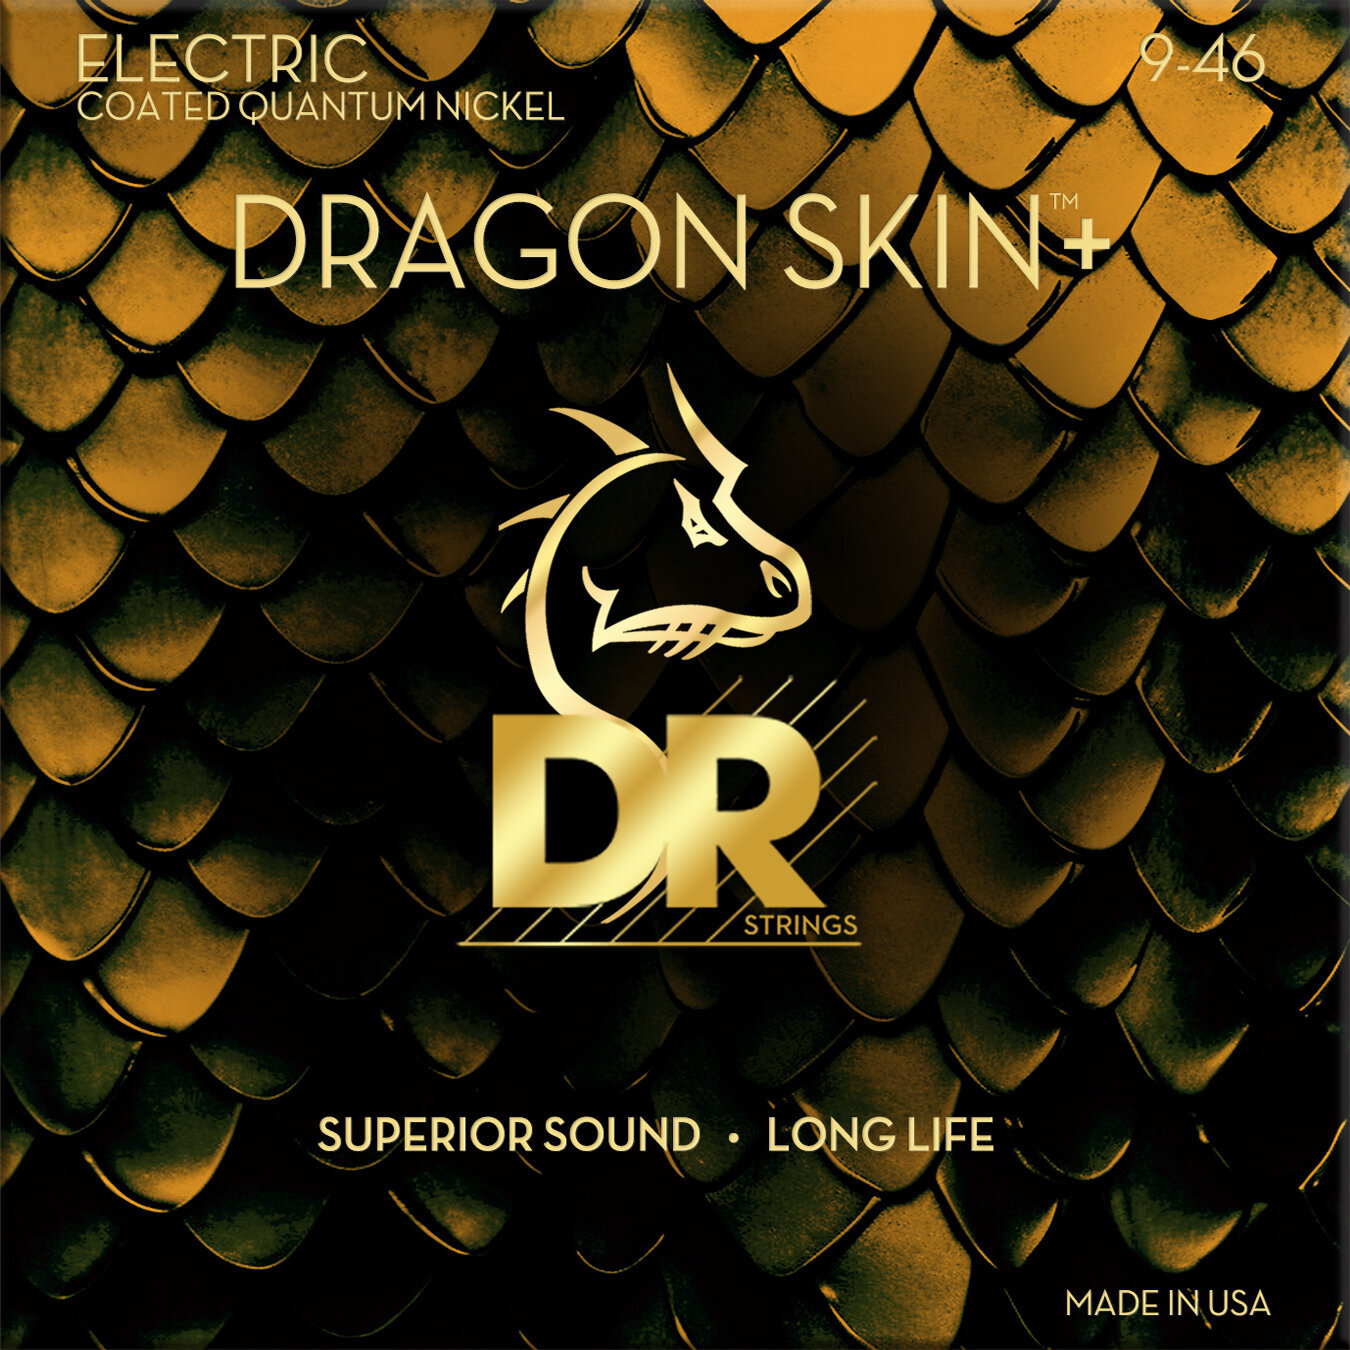 Snaren voor elektrische gitaar DR Strings Dragon Skin+ Coated Light to Medium 9-46